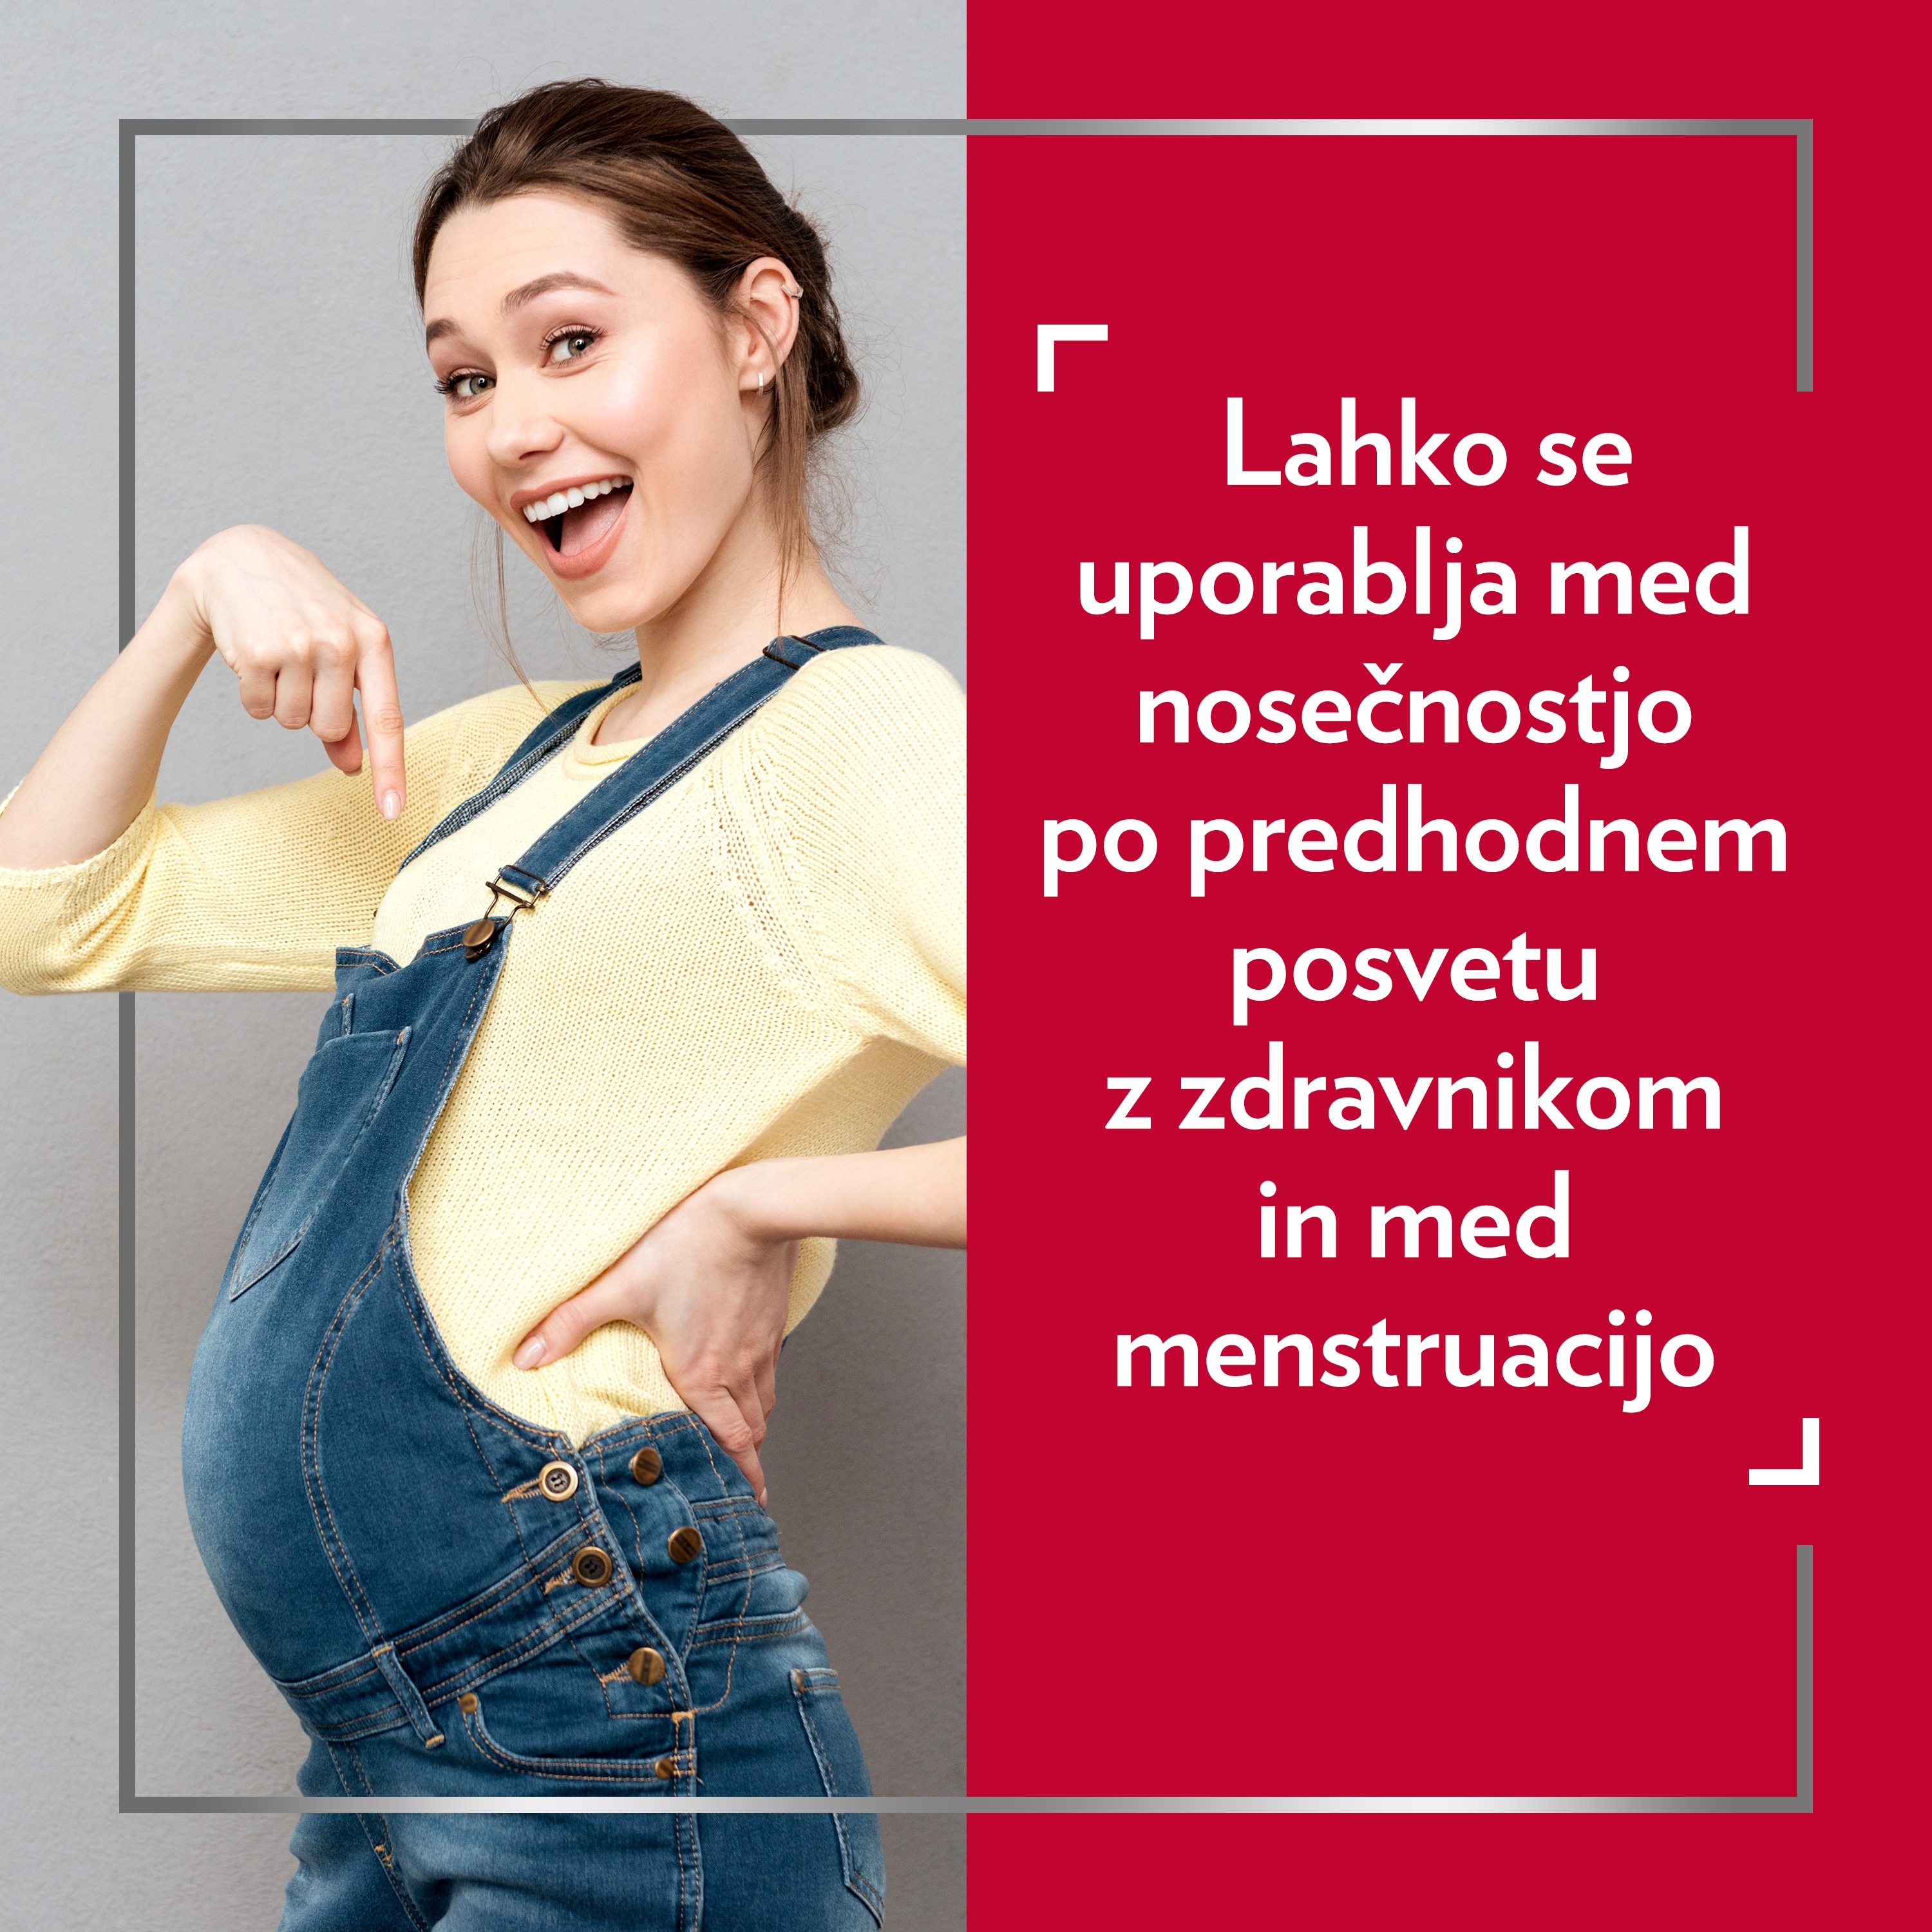 Vesela mlada noseča ženska v rumenem puloverju kaže na svoj trebušček. Na desni strani slike je napis: » Lahko se uporablja med nosečnostjo po posvetu z zdravnikom in med menstruacijo.